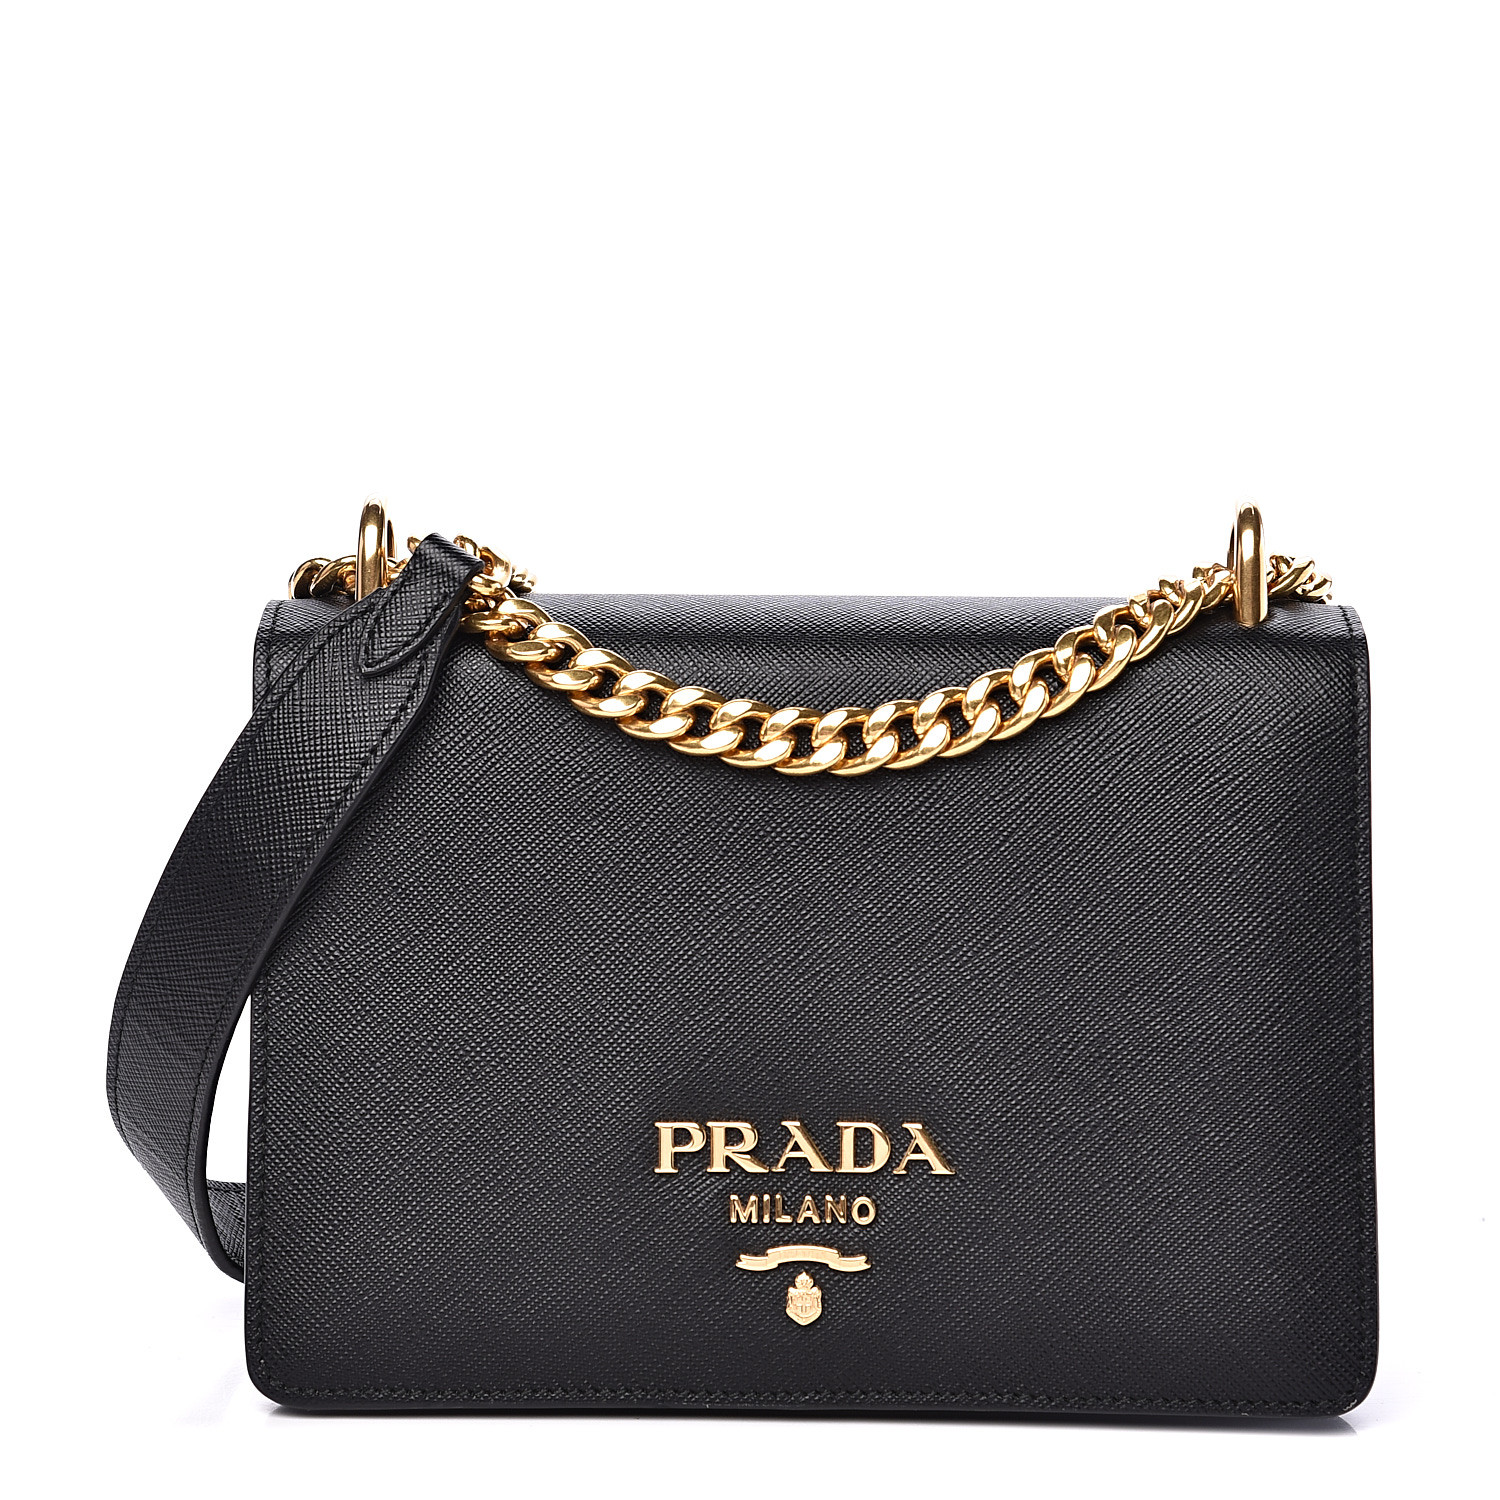 PRADA Saffiano Soft Calfskin Chain Crossbody Bag Black 537718